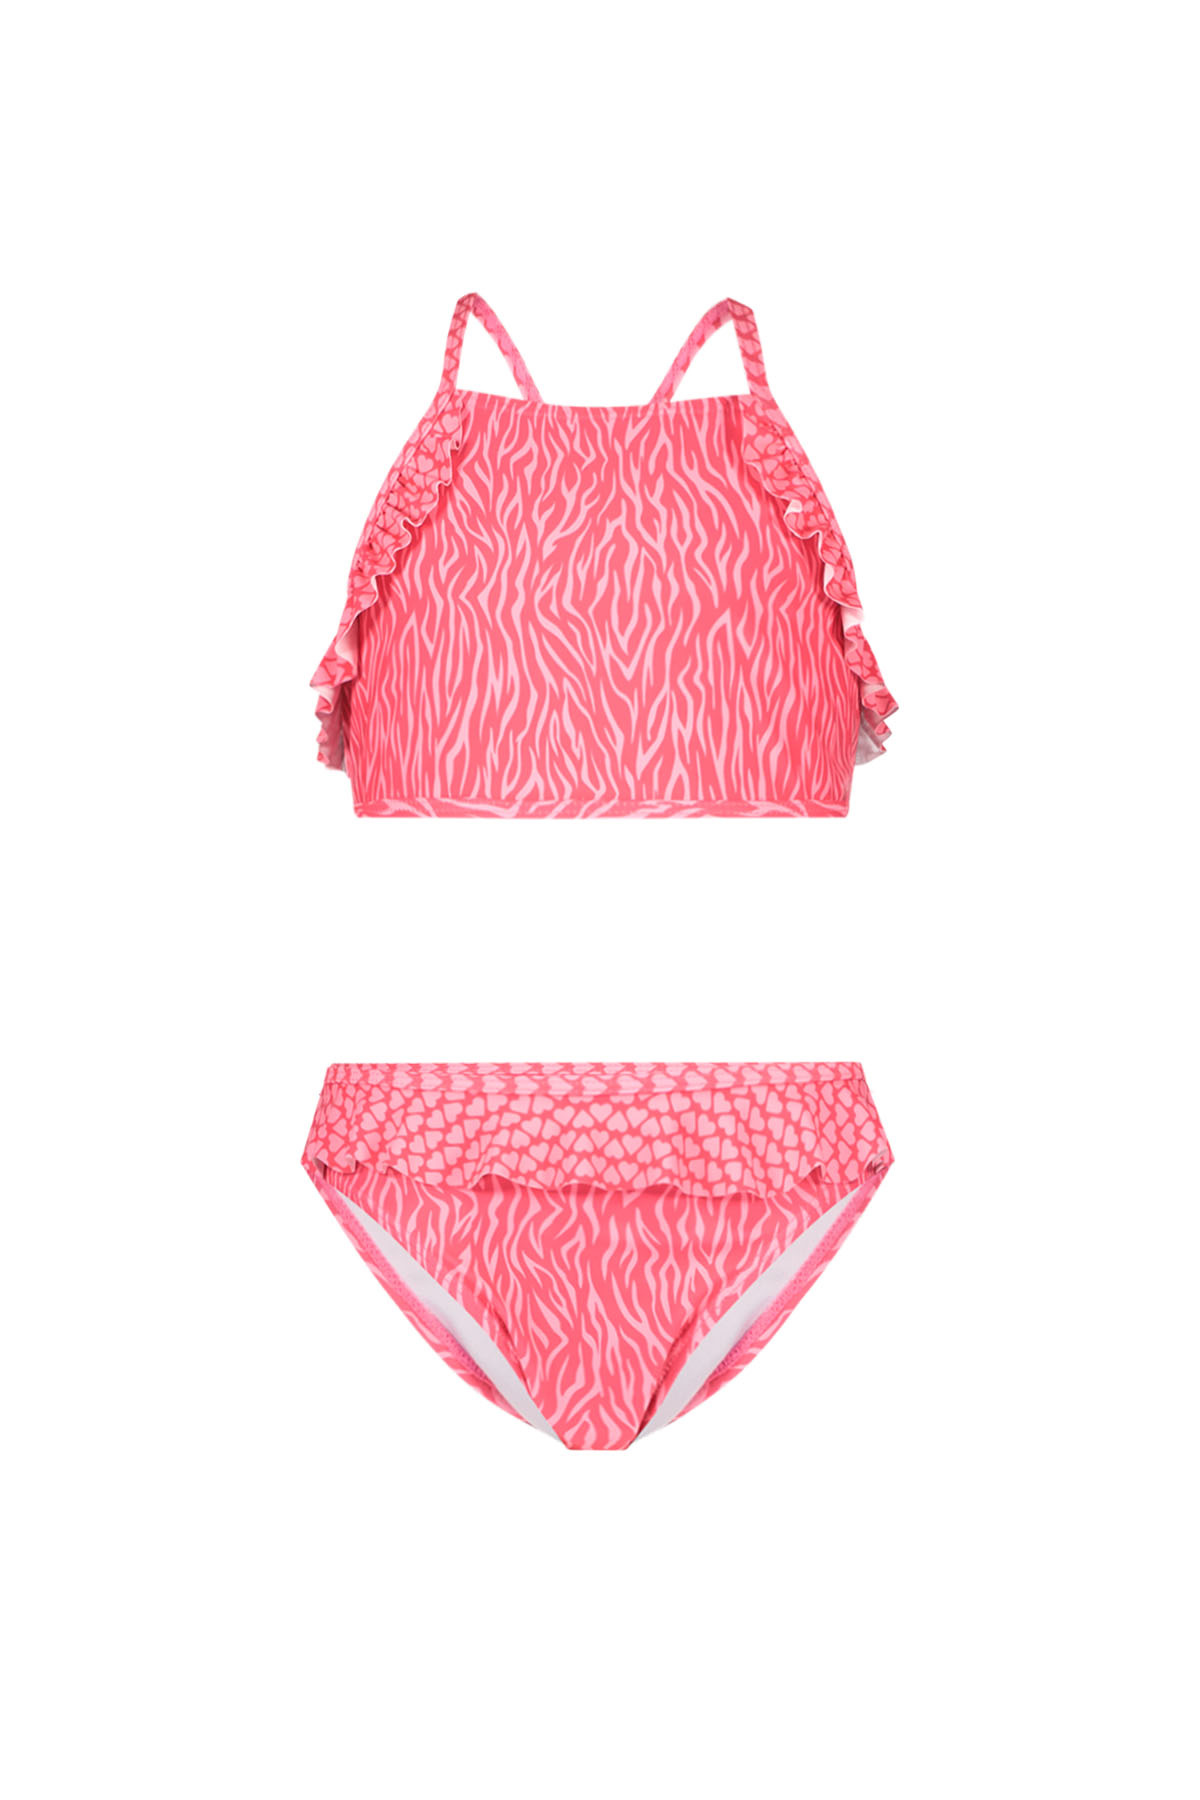 Just Beach Meisjes bikini - Aruba zebra - Wavy streep